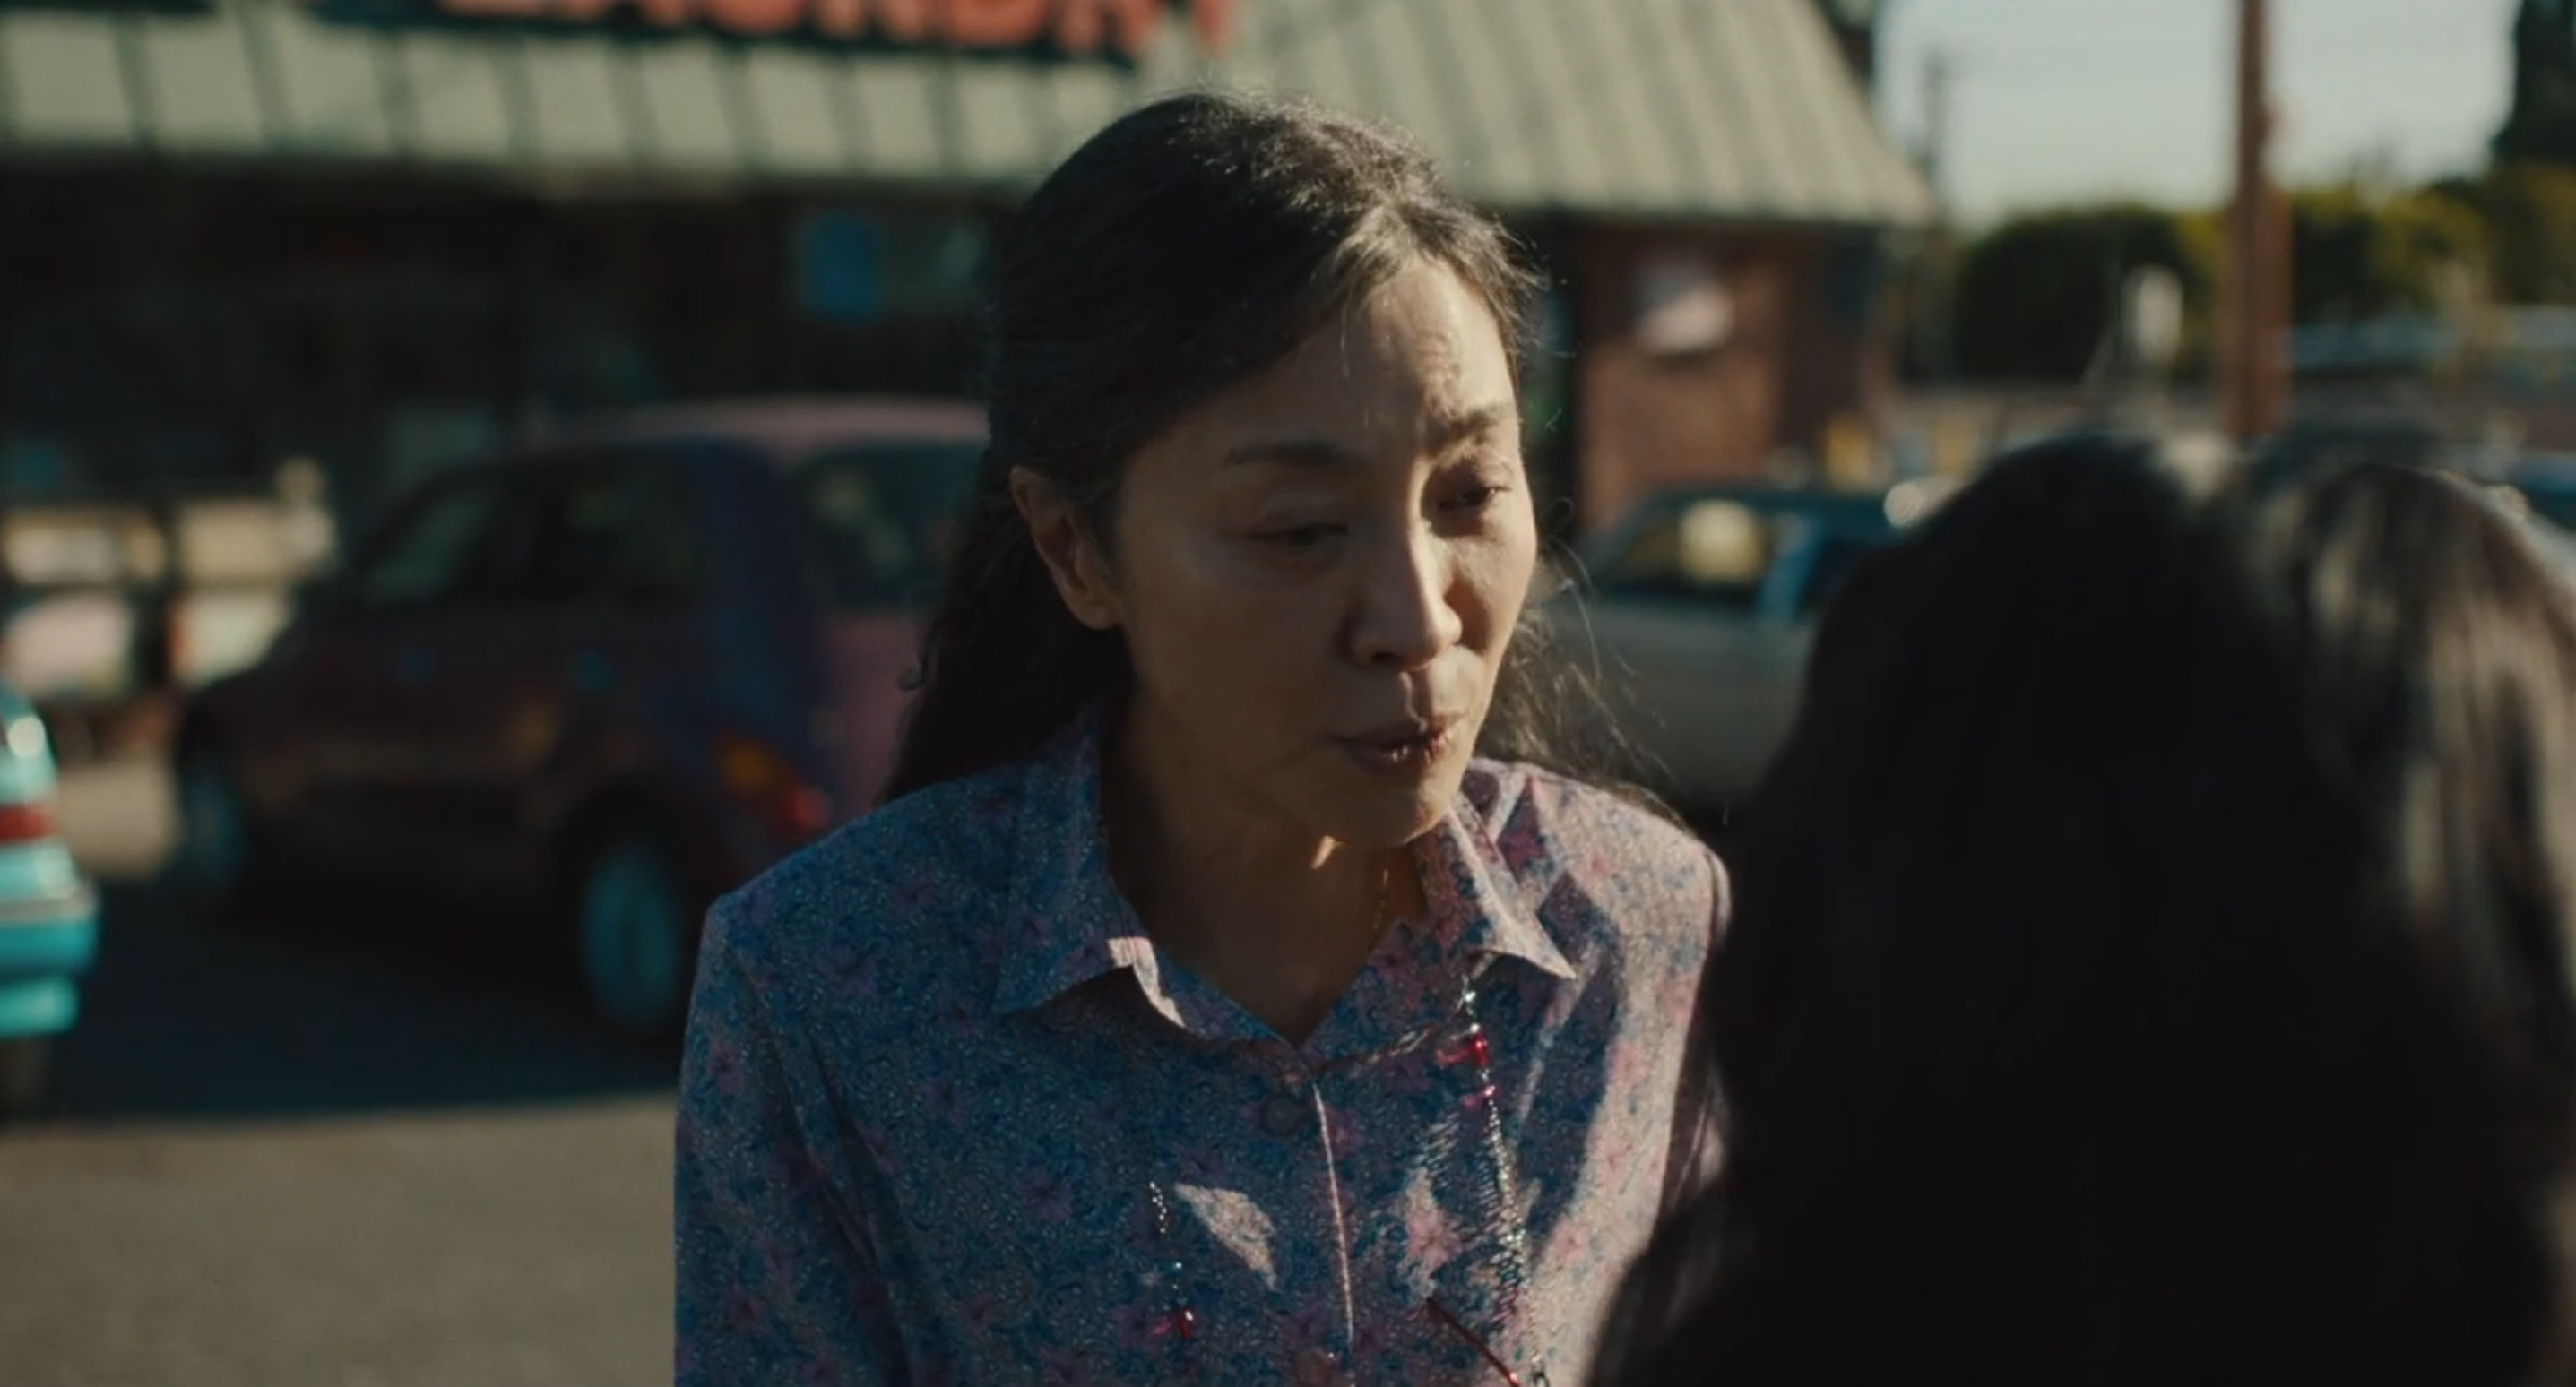 frame del film dove la protagonista e sul parcheggio della lavanderia parlando con la sua figlia che sta per salire alla macchina.